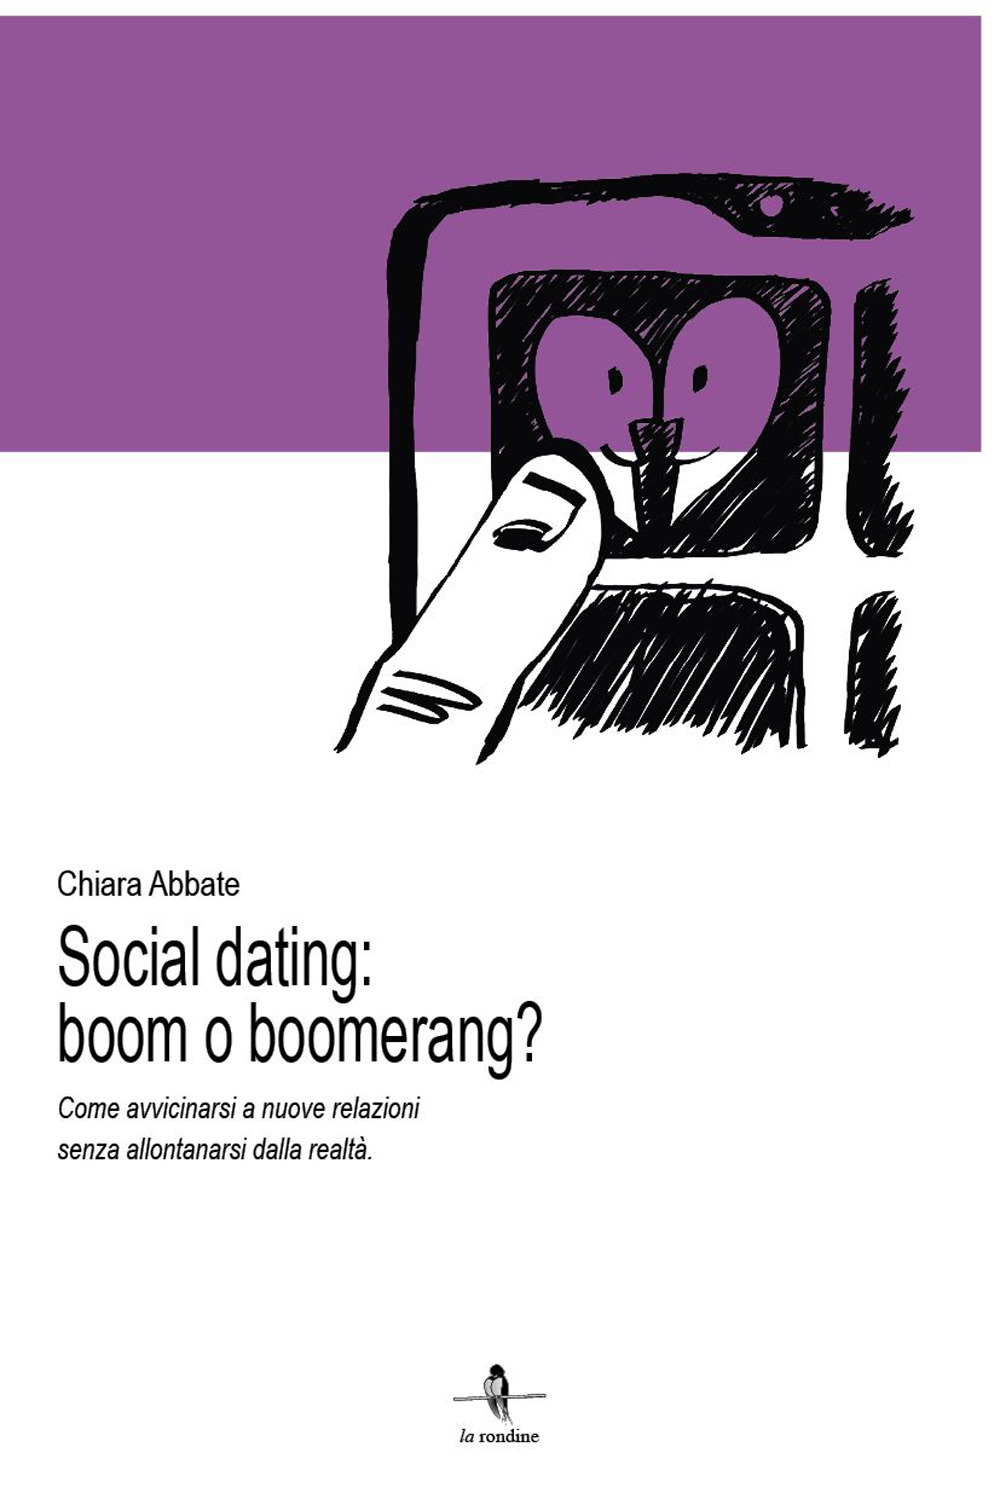 Social dating: boom o boomerang? Come avvicinarsi a nuove relazioni senza allontanarsi dalla realtà